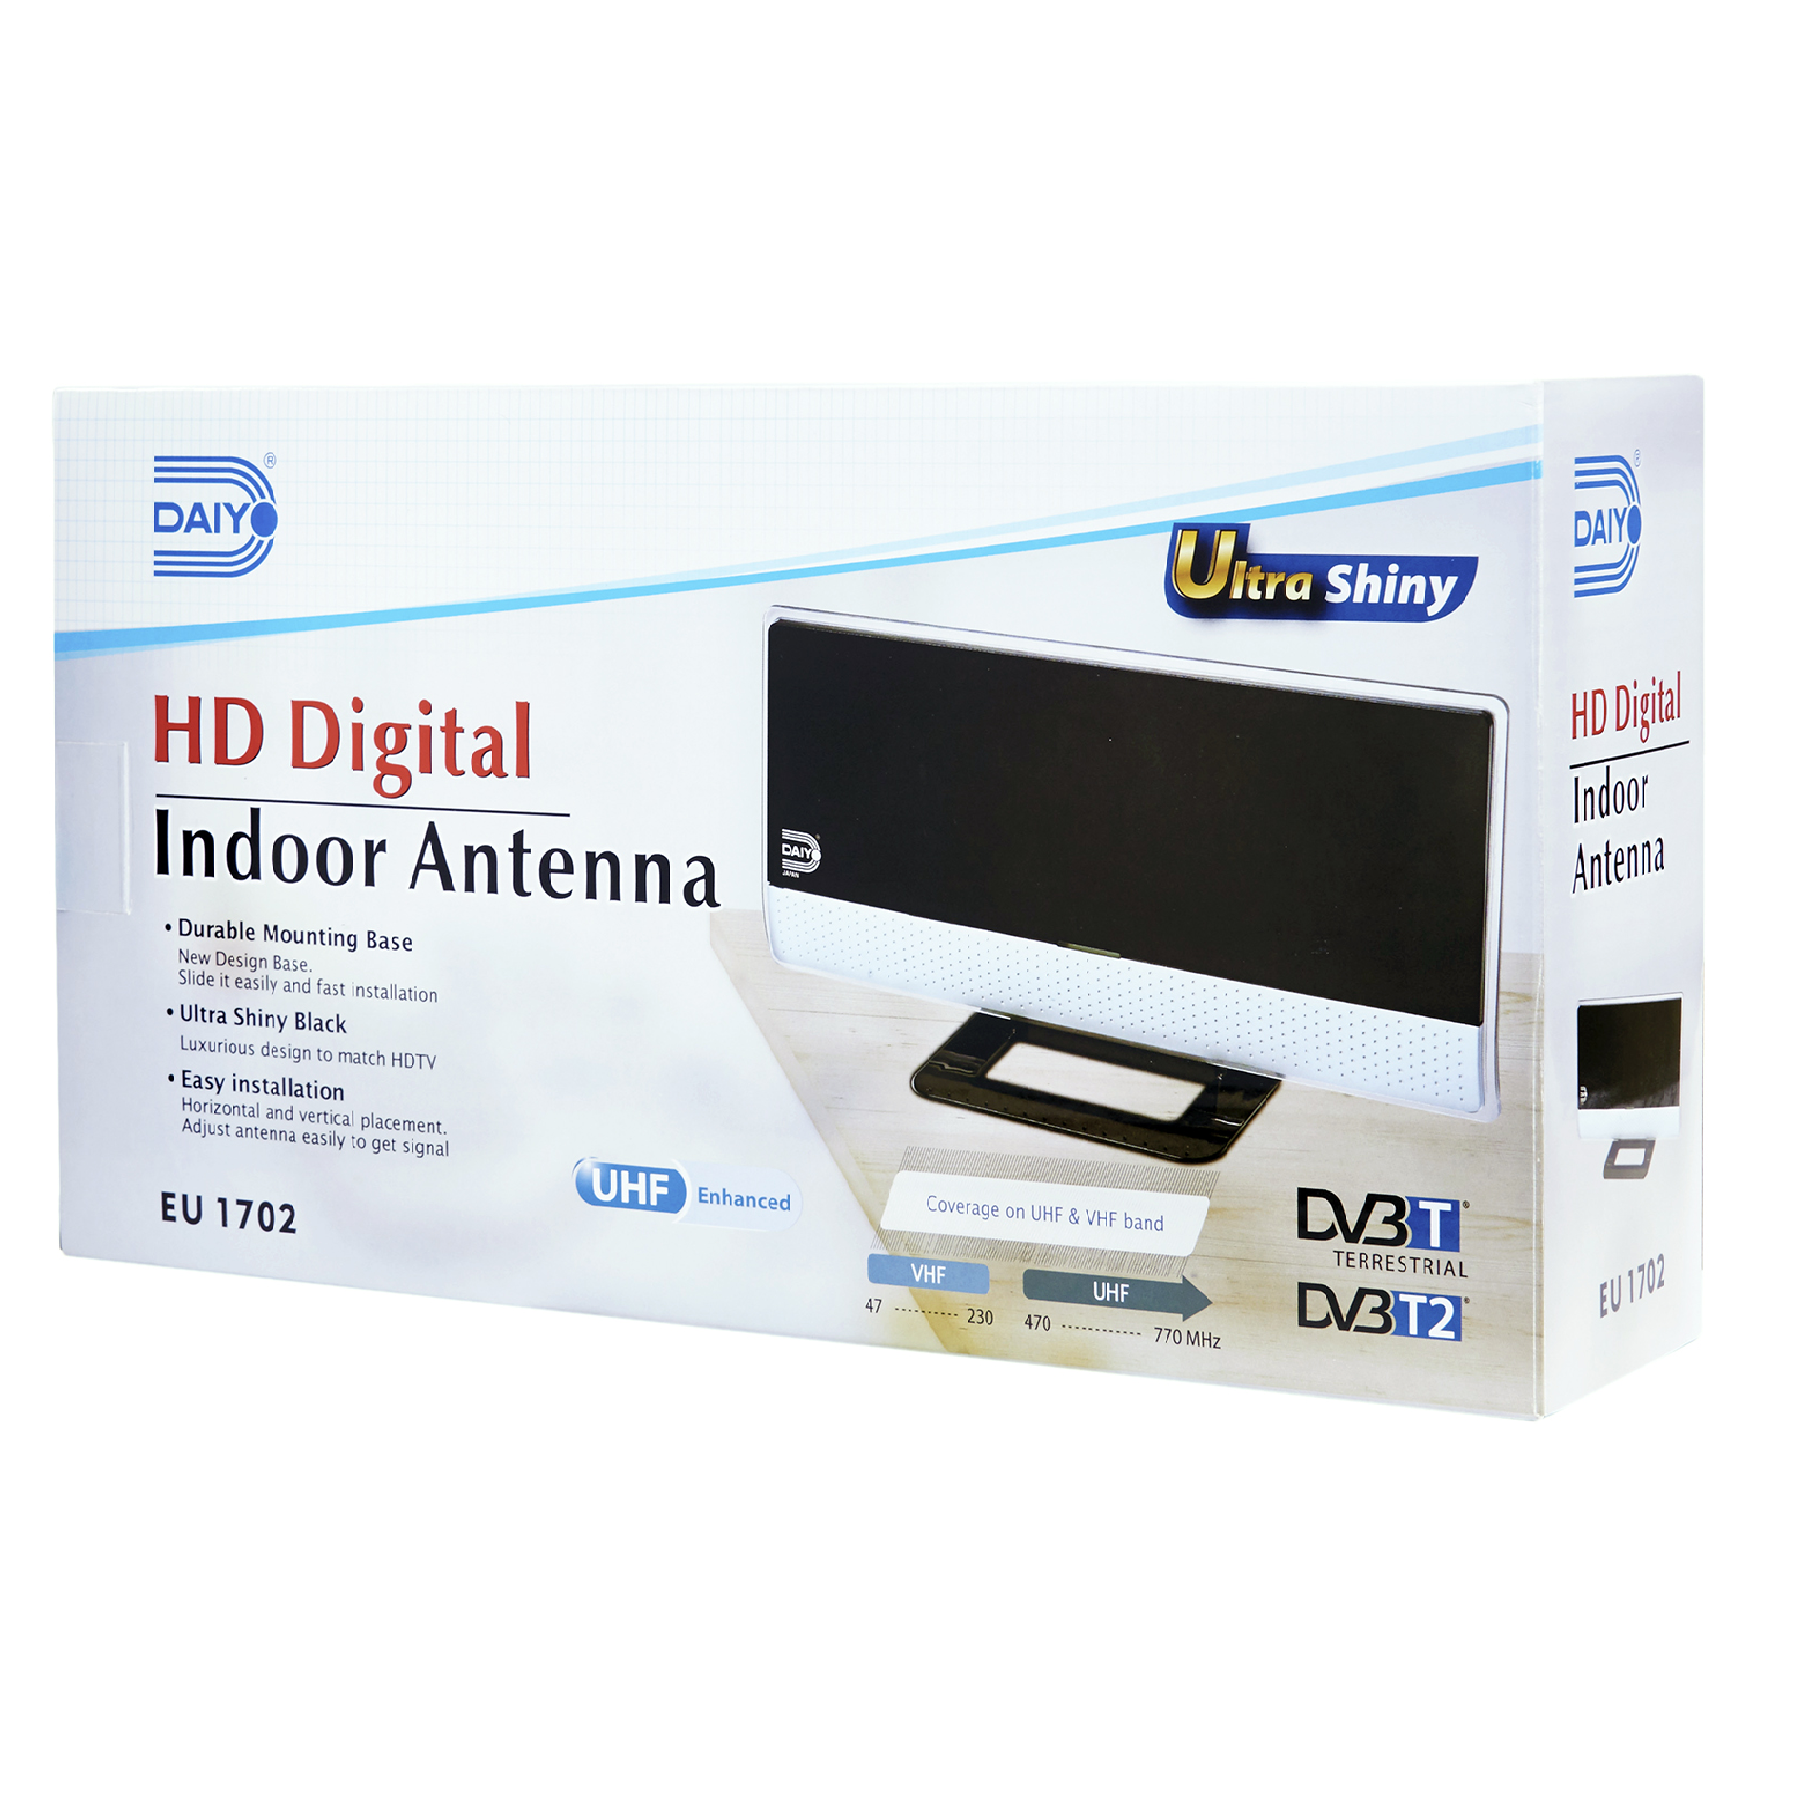 Daiyo EU1702 HD Digital Indoor Antenna With Booster